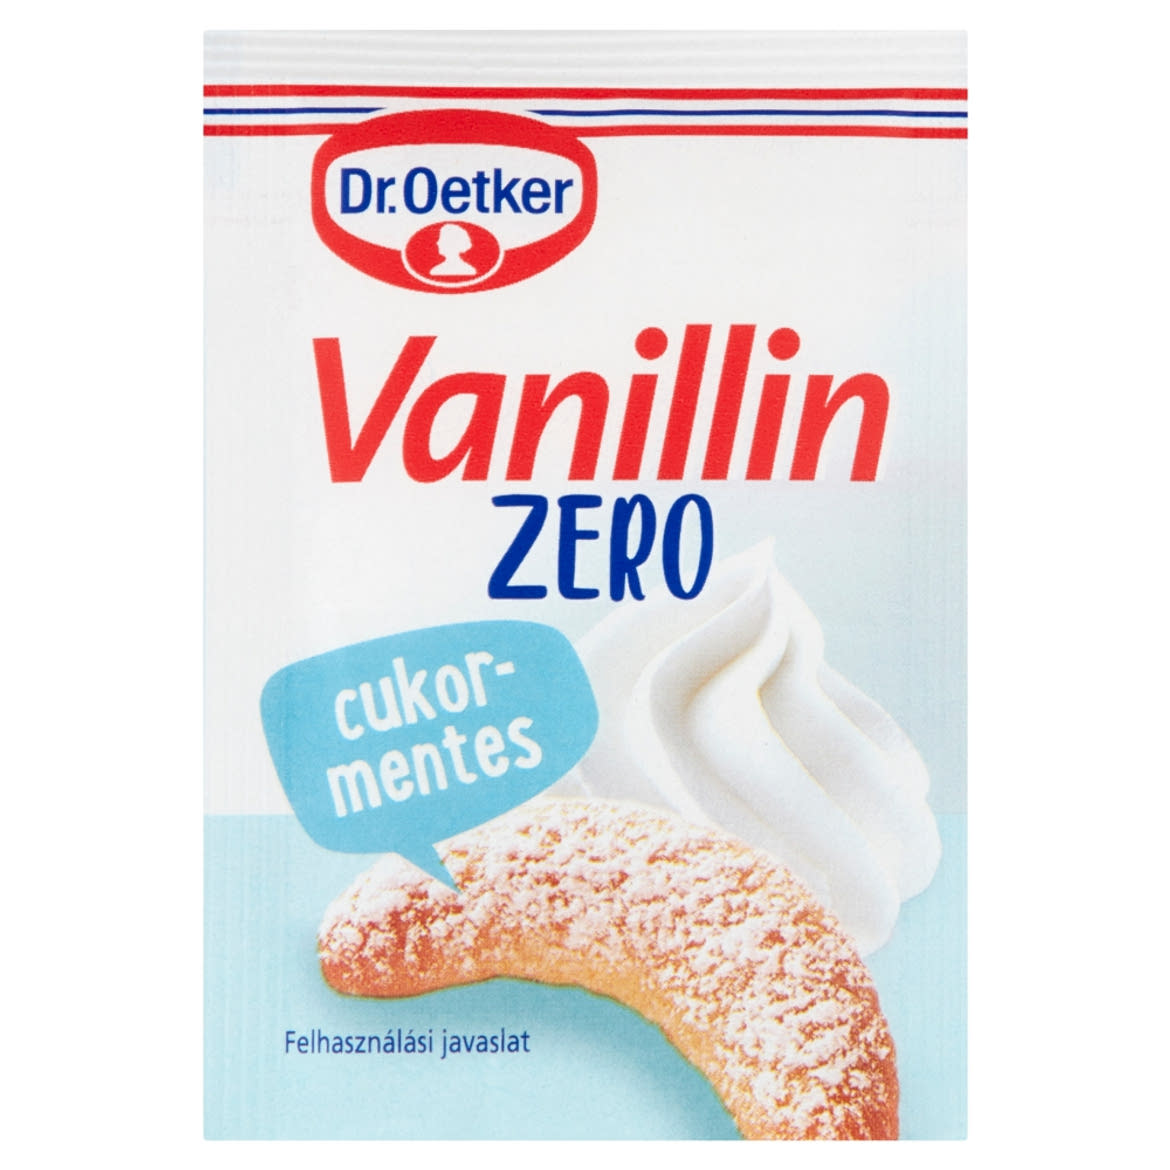 Dr. Oetker Vanillin Zero édesítőszer